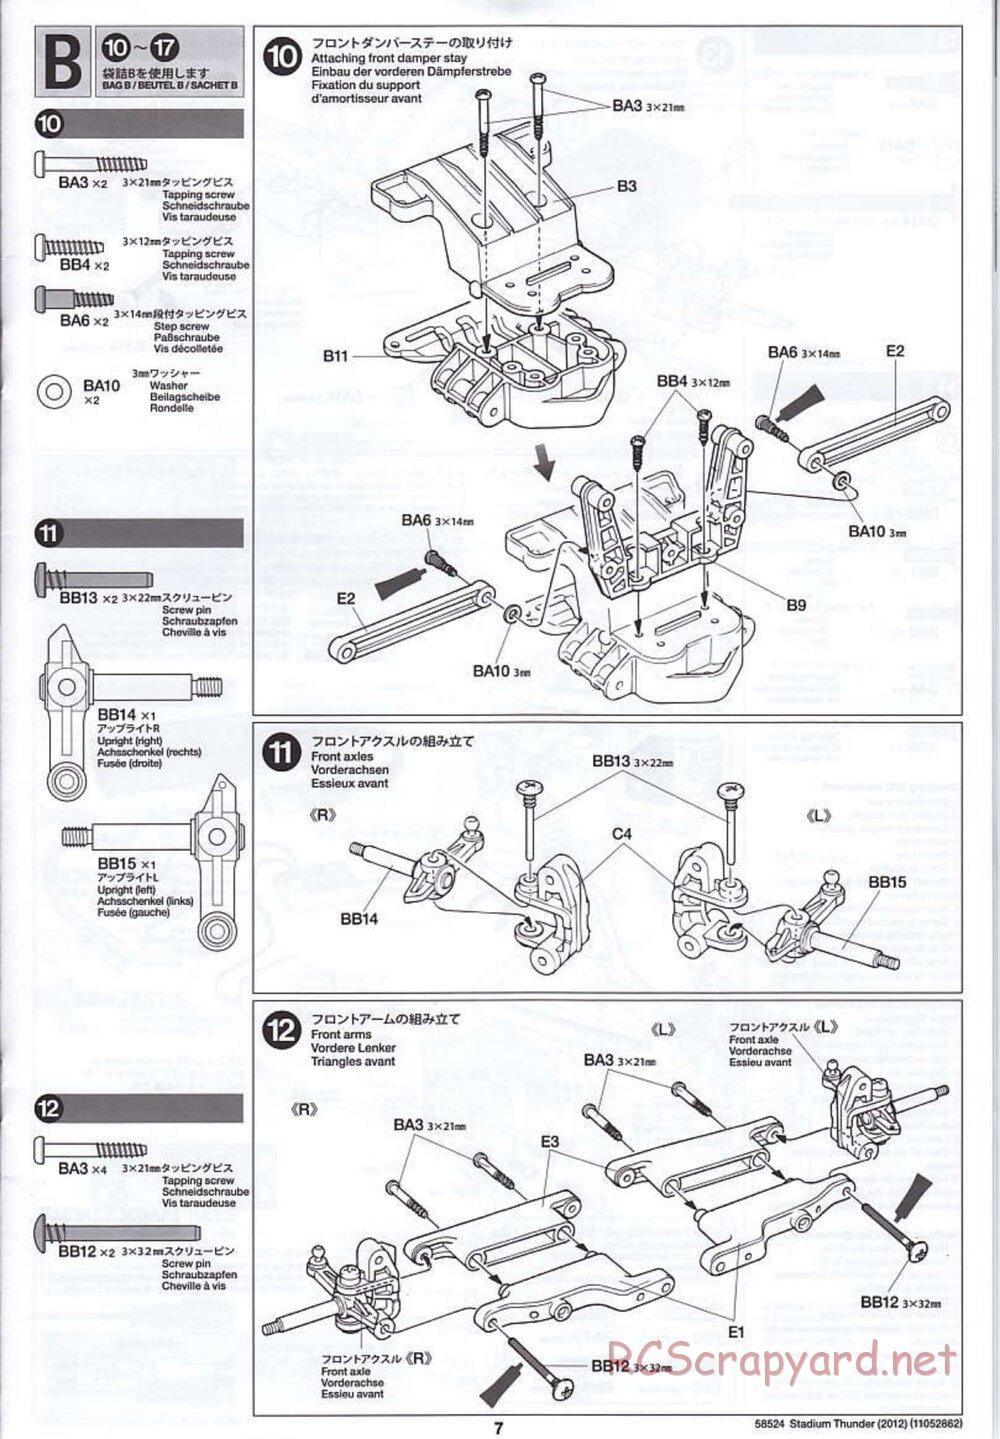 Tamiya - Stadium Thunder 2012 - FAL Chassis - Manual - Page 7